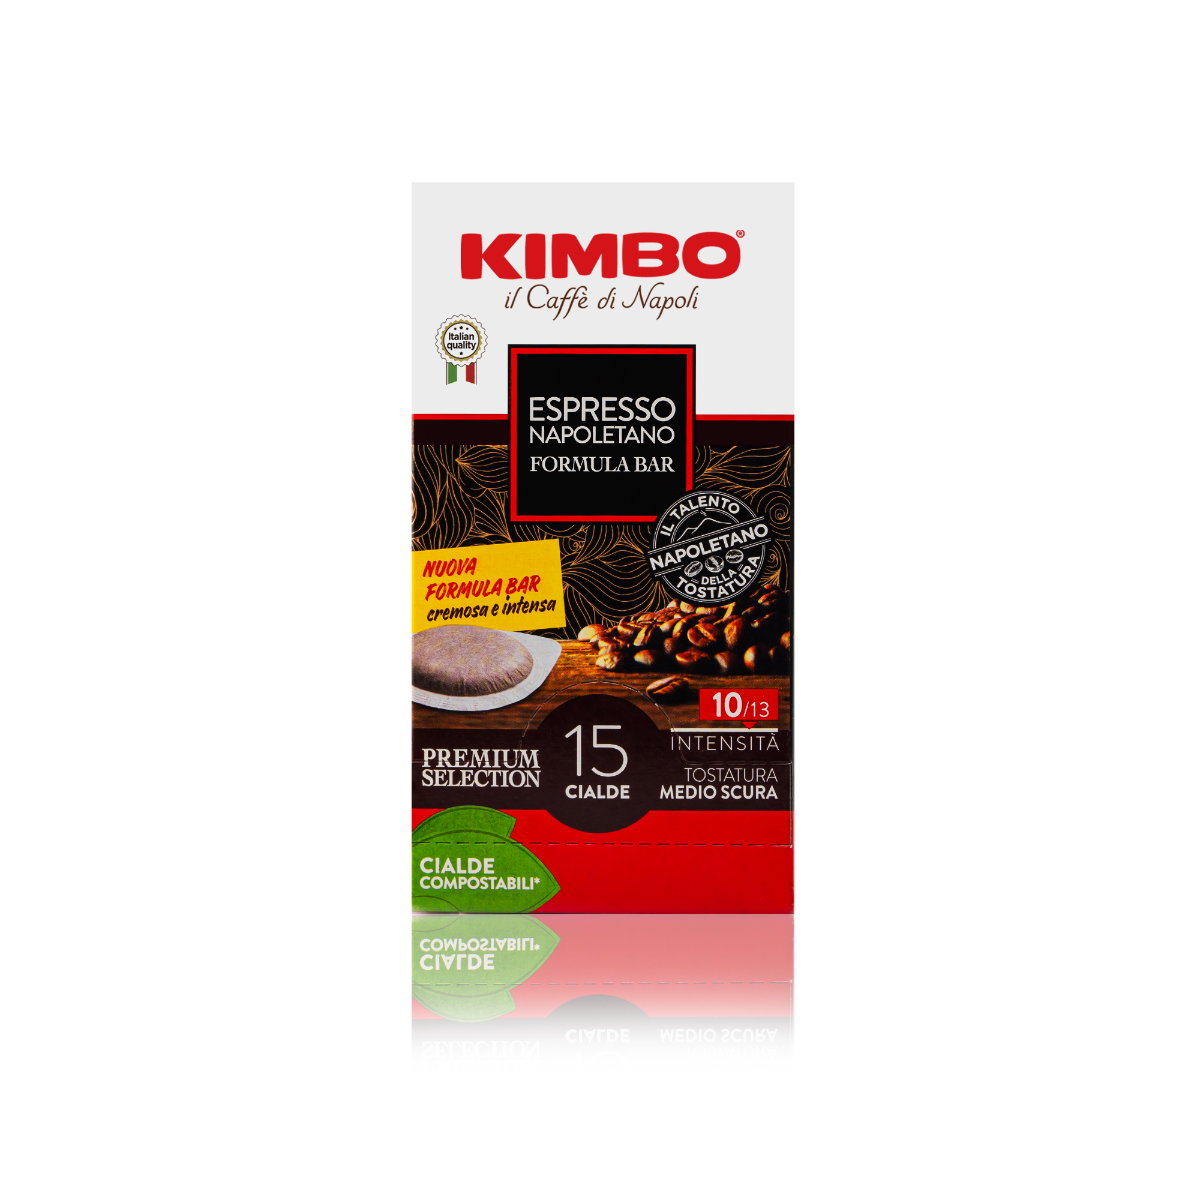 Kimbo Espresso Napoletano E.S.E. Serving 15 stuks